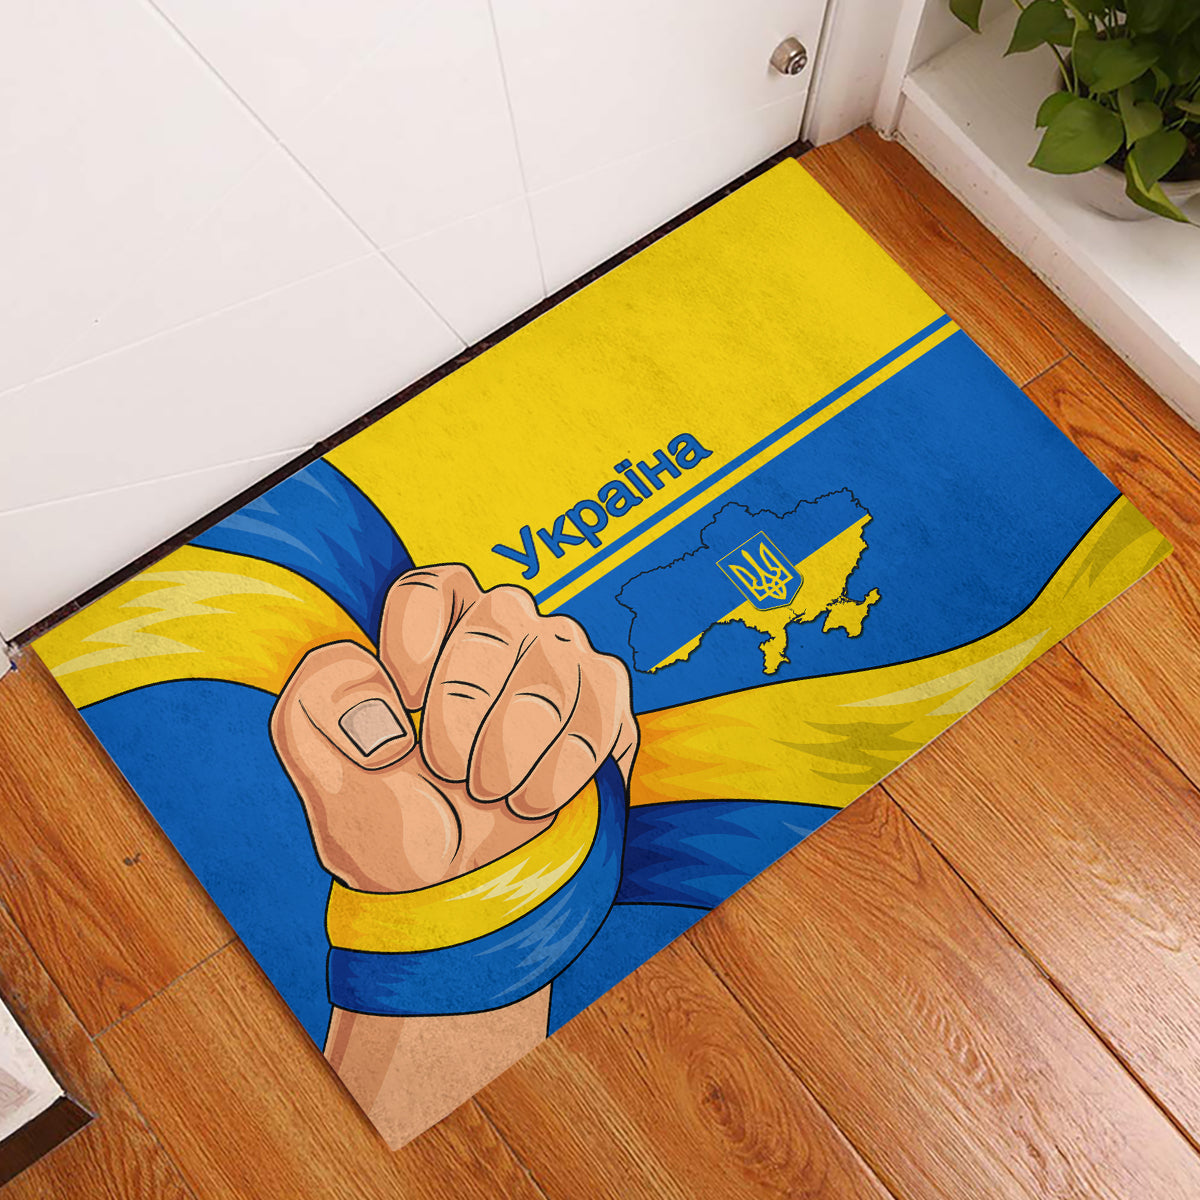 ukraine-unity-day-rubber-doormat-ukrainian-unification-act